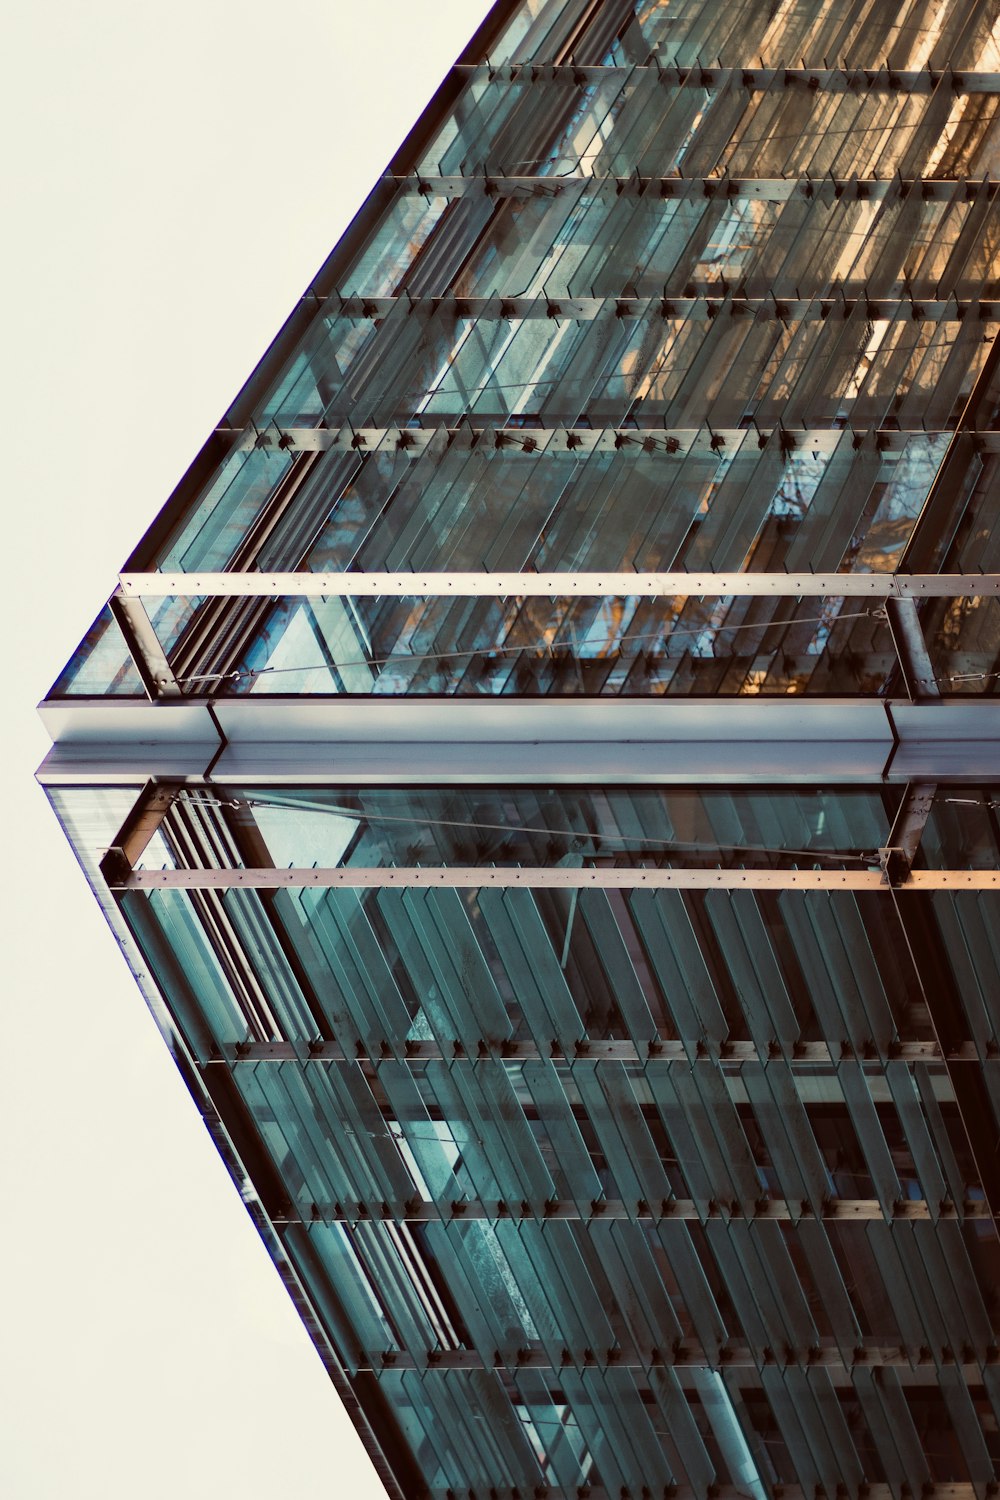 Fotografía de ángulo bajo de edificios de gran altura